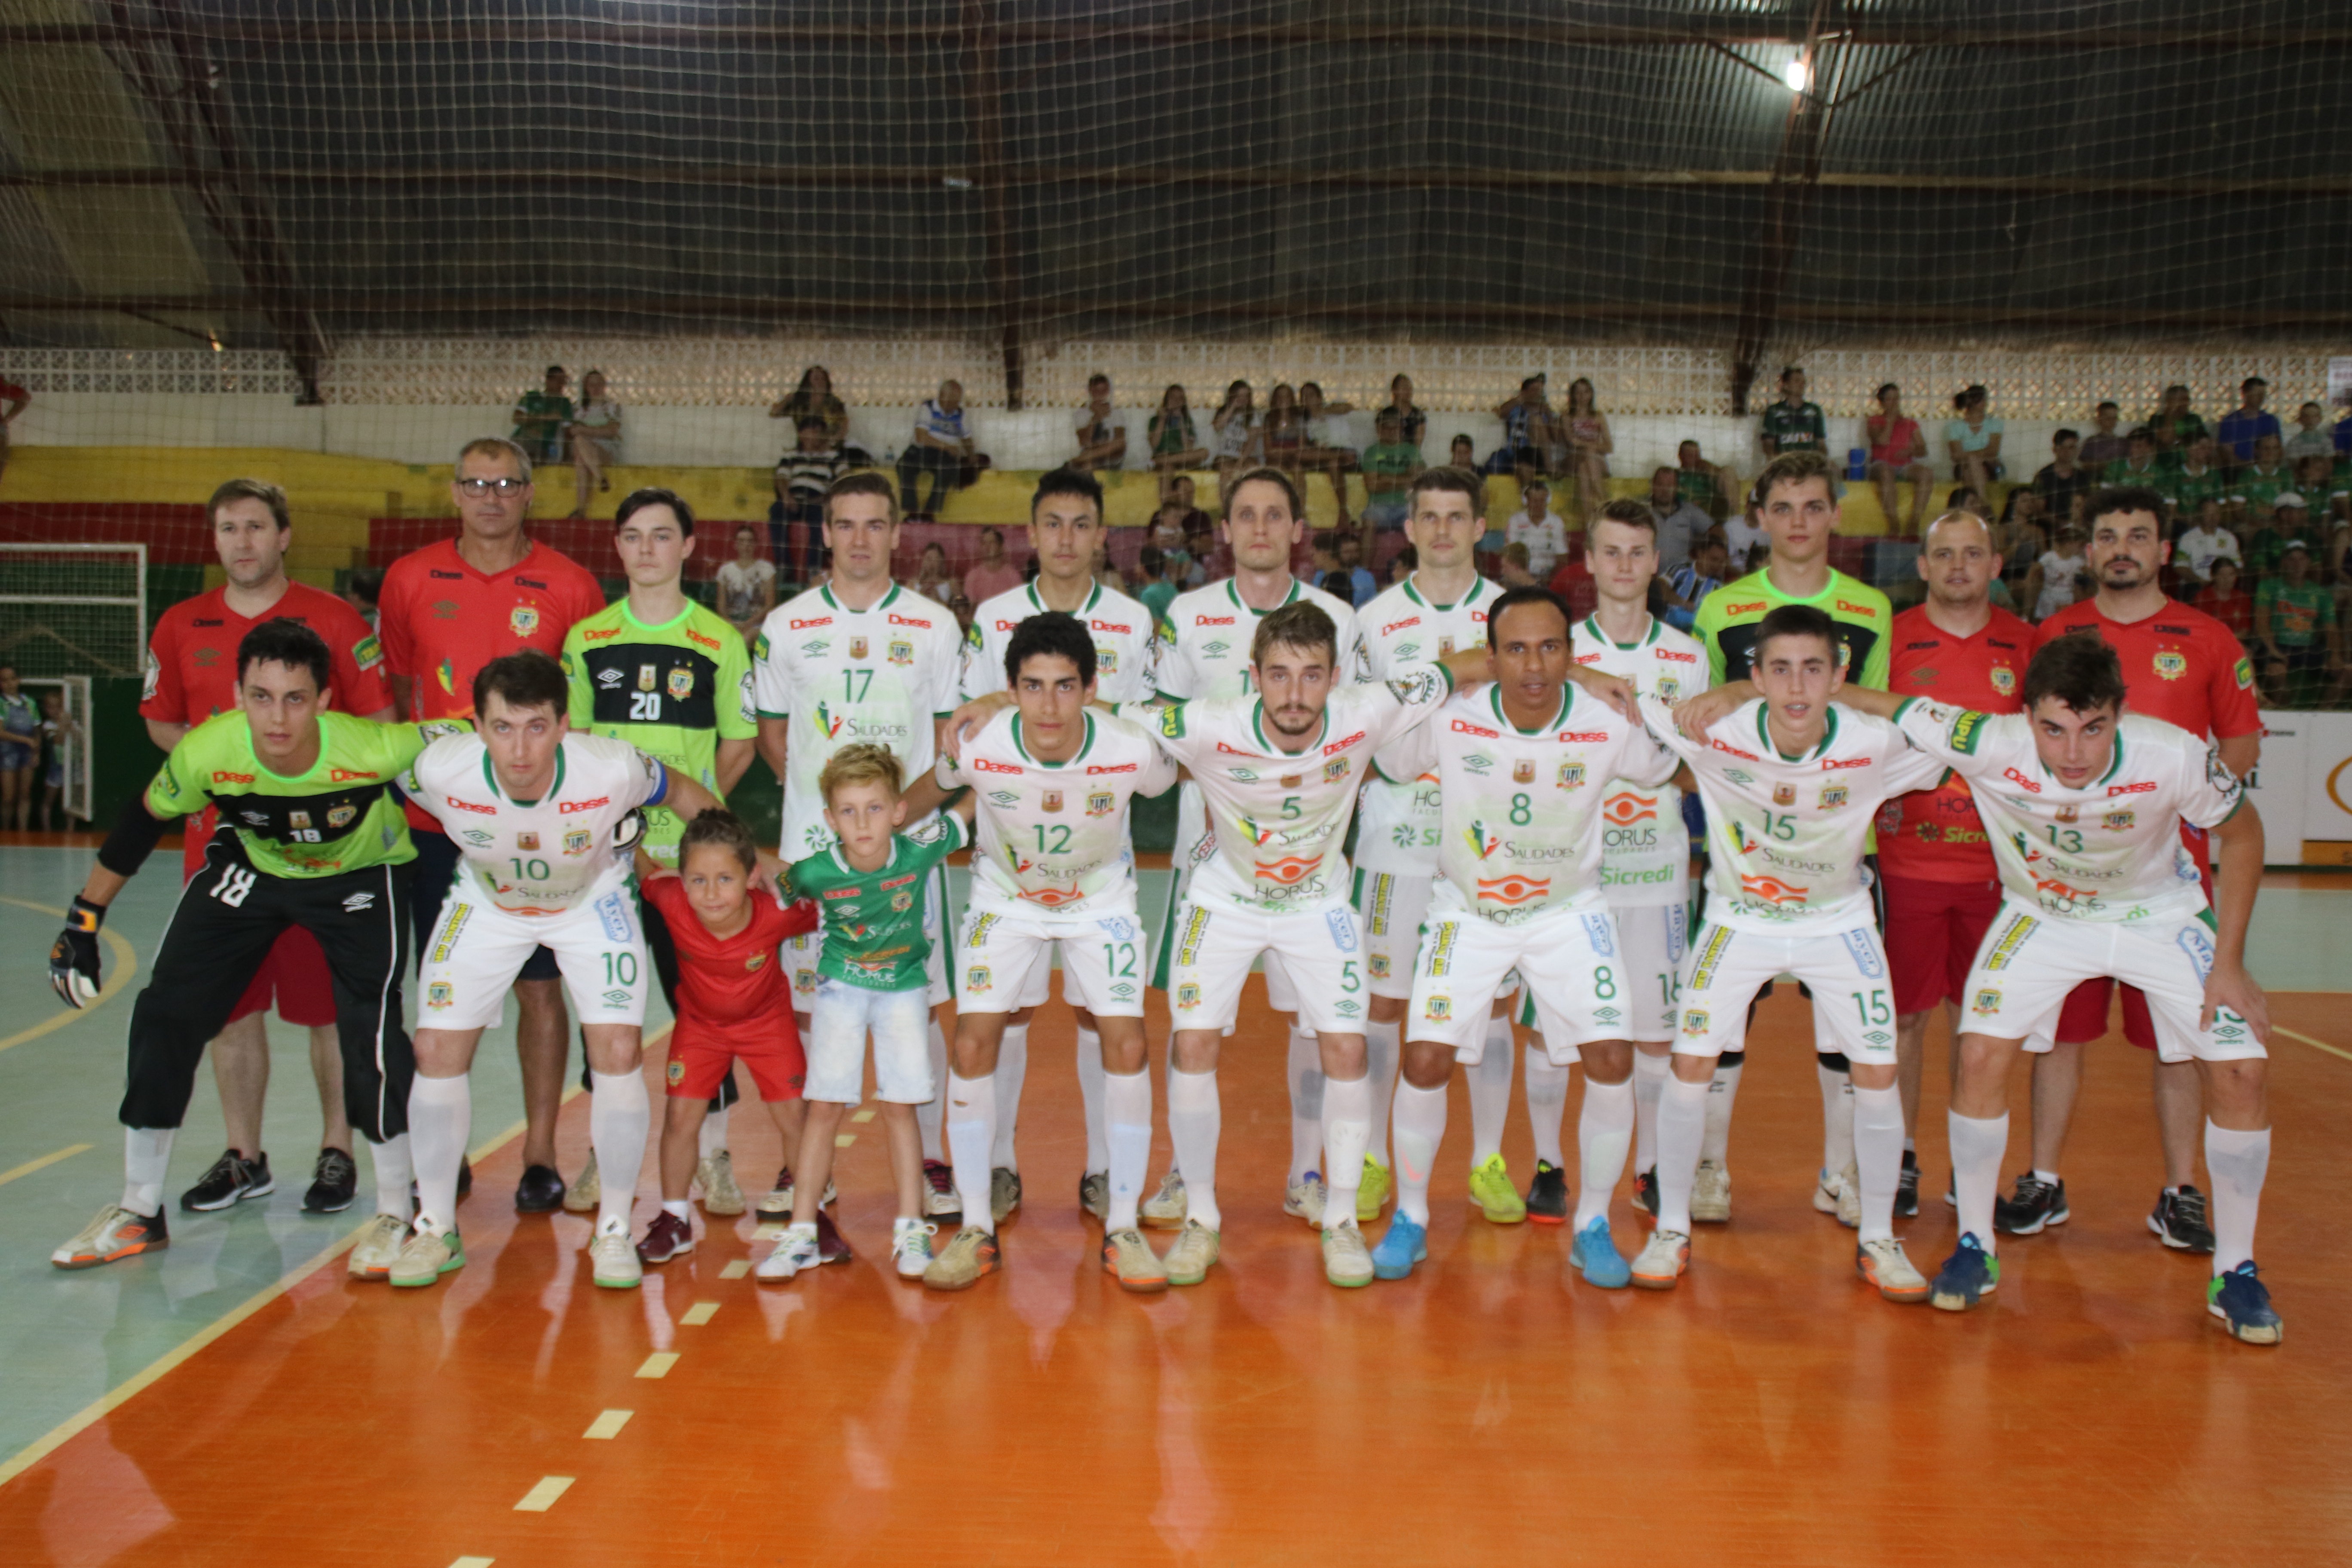 Equipe da ADAF Saudades acabou perdendo o jogo de volta das semifinais da Liga Catarinense de Futsal